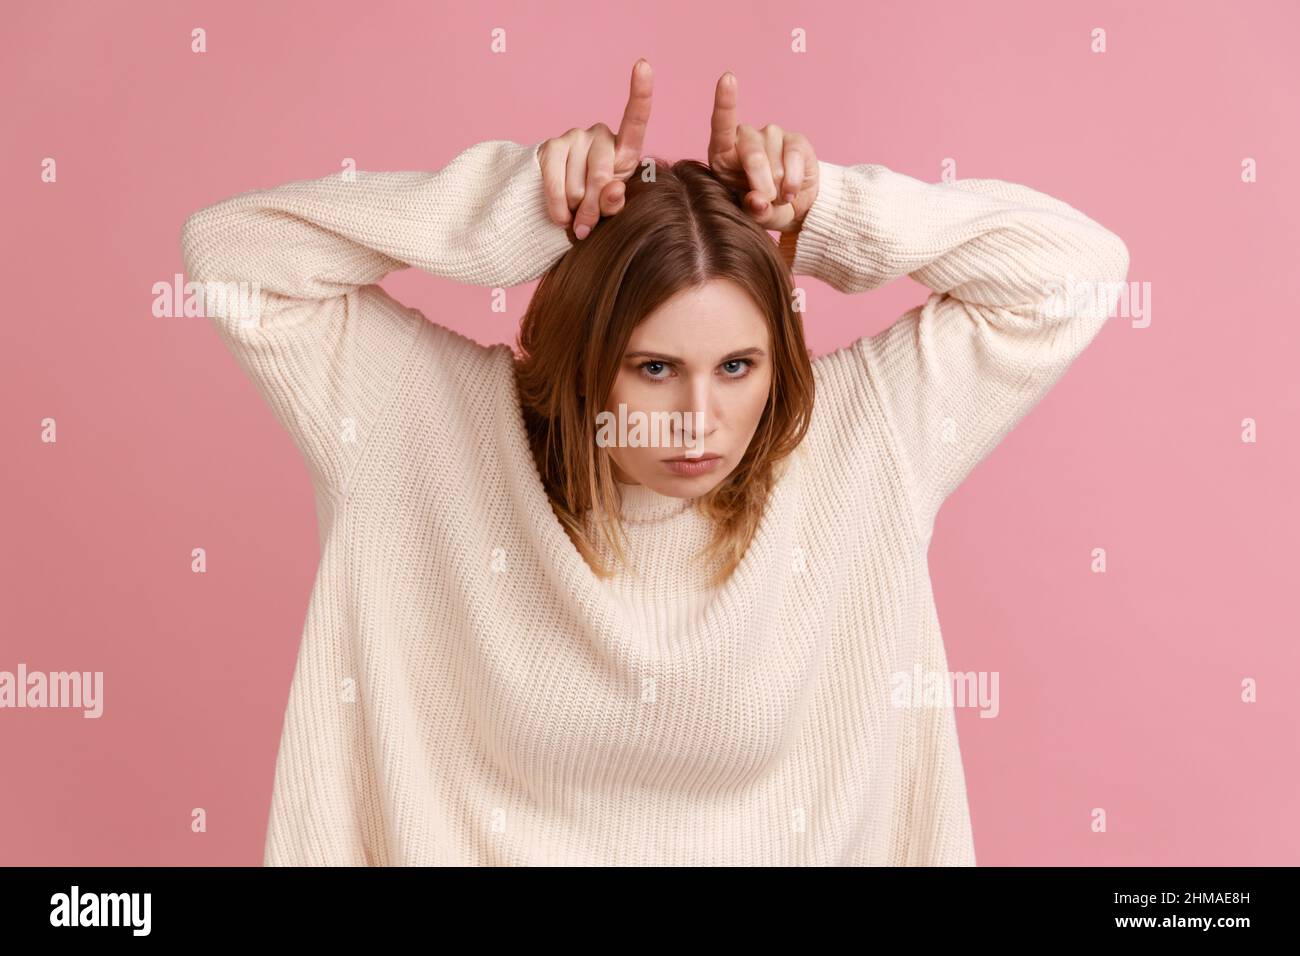 Porträt einer aggressiven blonden Frau, die Stierhörner über ihren Kopf und ihr Stirnrunzeln macht und die Bedrohung durch Wut zum Ausdruck bringt, in einem weißen Pullover. Innenaufnahme des Studios isoliert auf rosa Hintergrund. Stockfoto